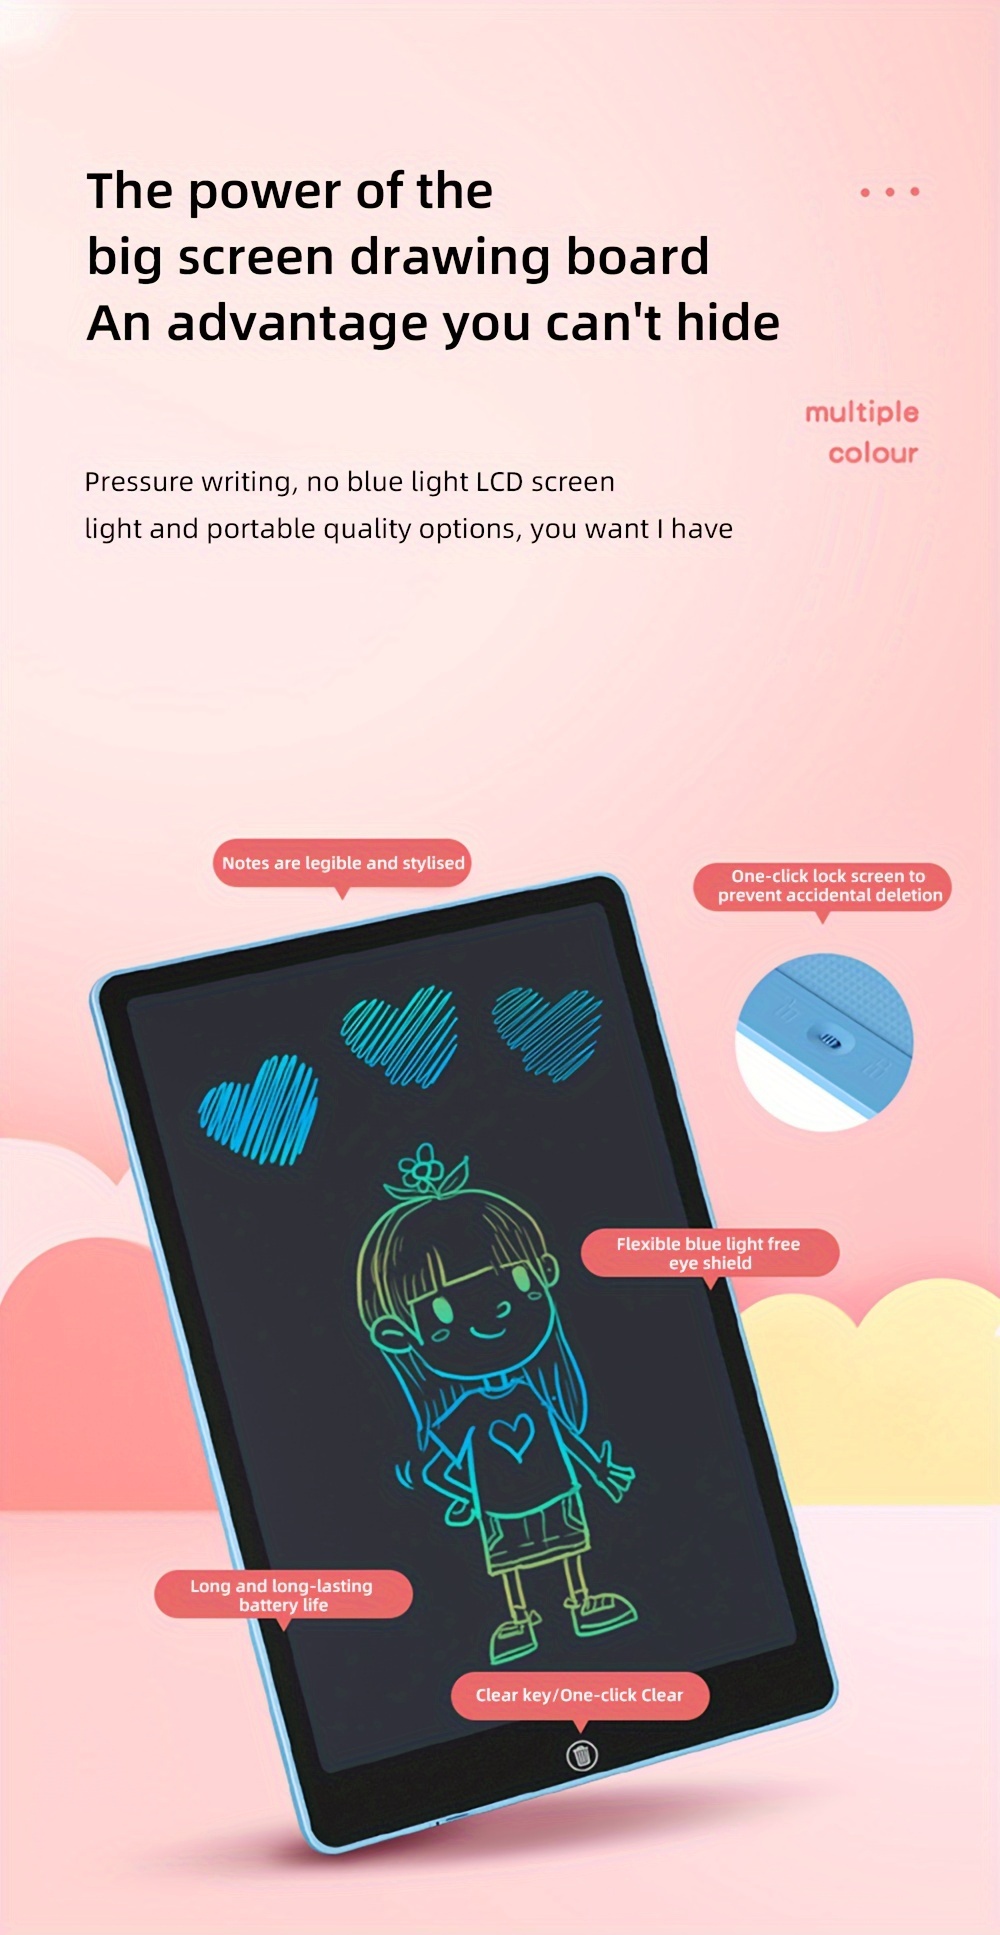 Toddler LCD Lavagna Luminosa Per Disegno A Mano, Impermeabile Con  Protezione Degli Occhi Per Disegni E